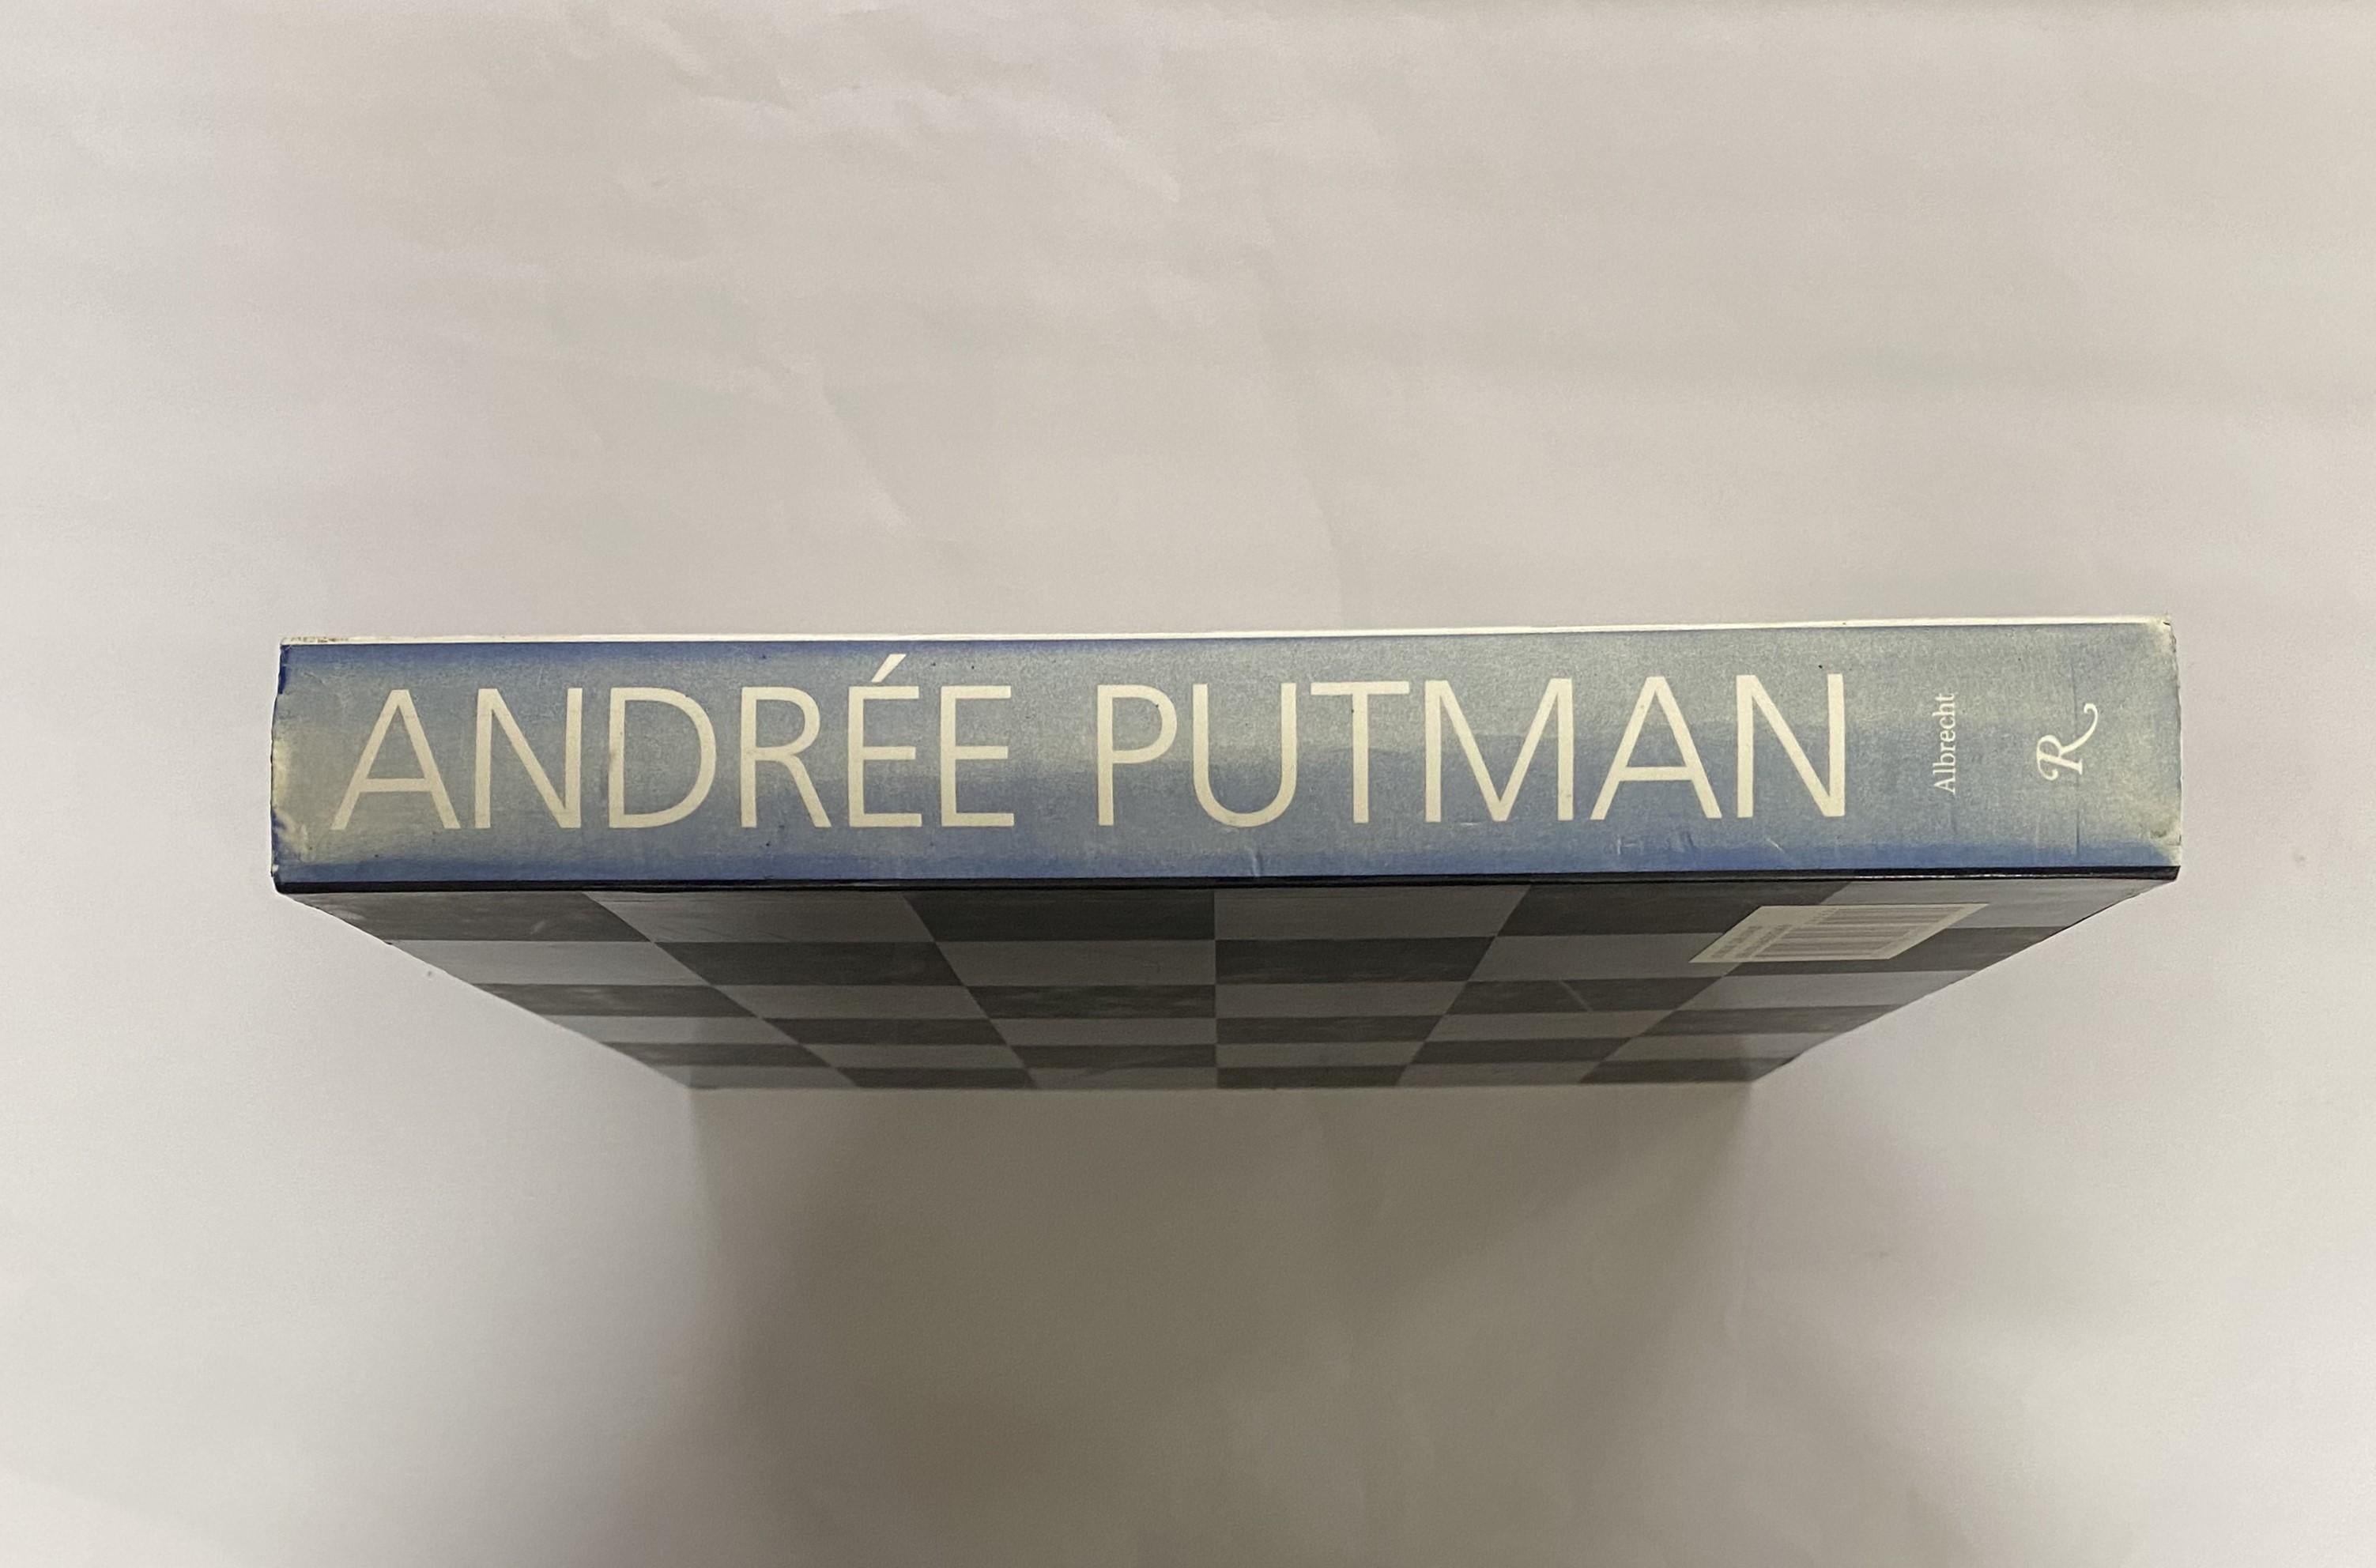 Incontestablement la grande dame du design moderne, Andrée Putman a fait irruption sur la scène il y a vingt-cinq ans avec les intérieurs graphiques en noir et blanc de l'hôtel Morgans à New York. Depuis lors, M. Putman a redéfini le design pour